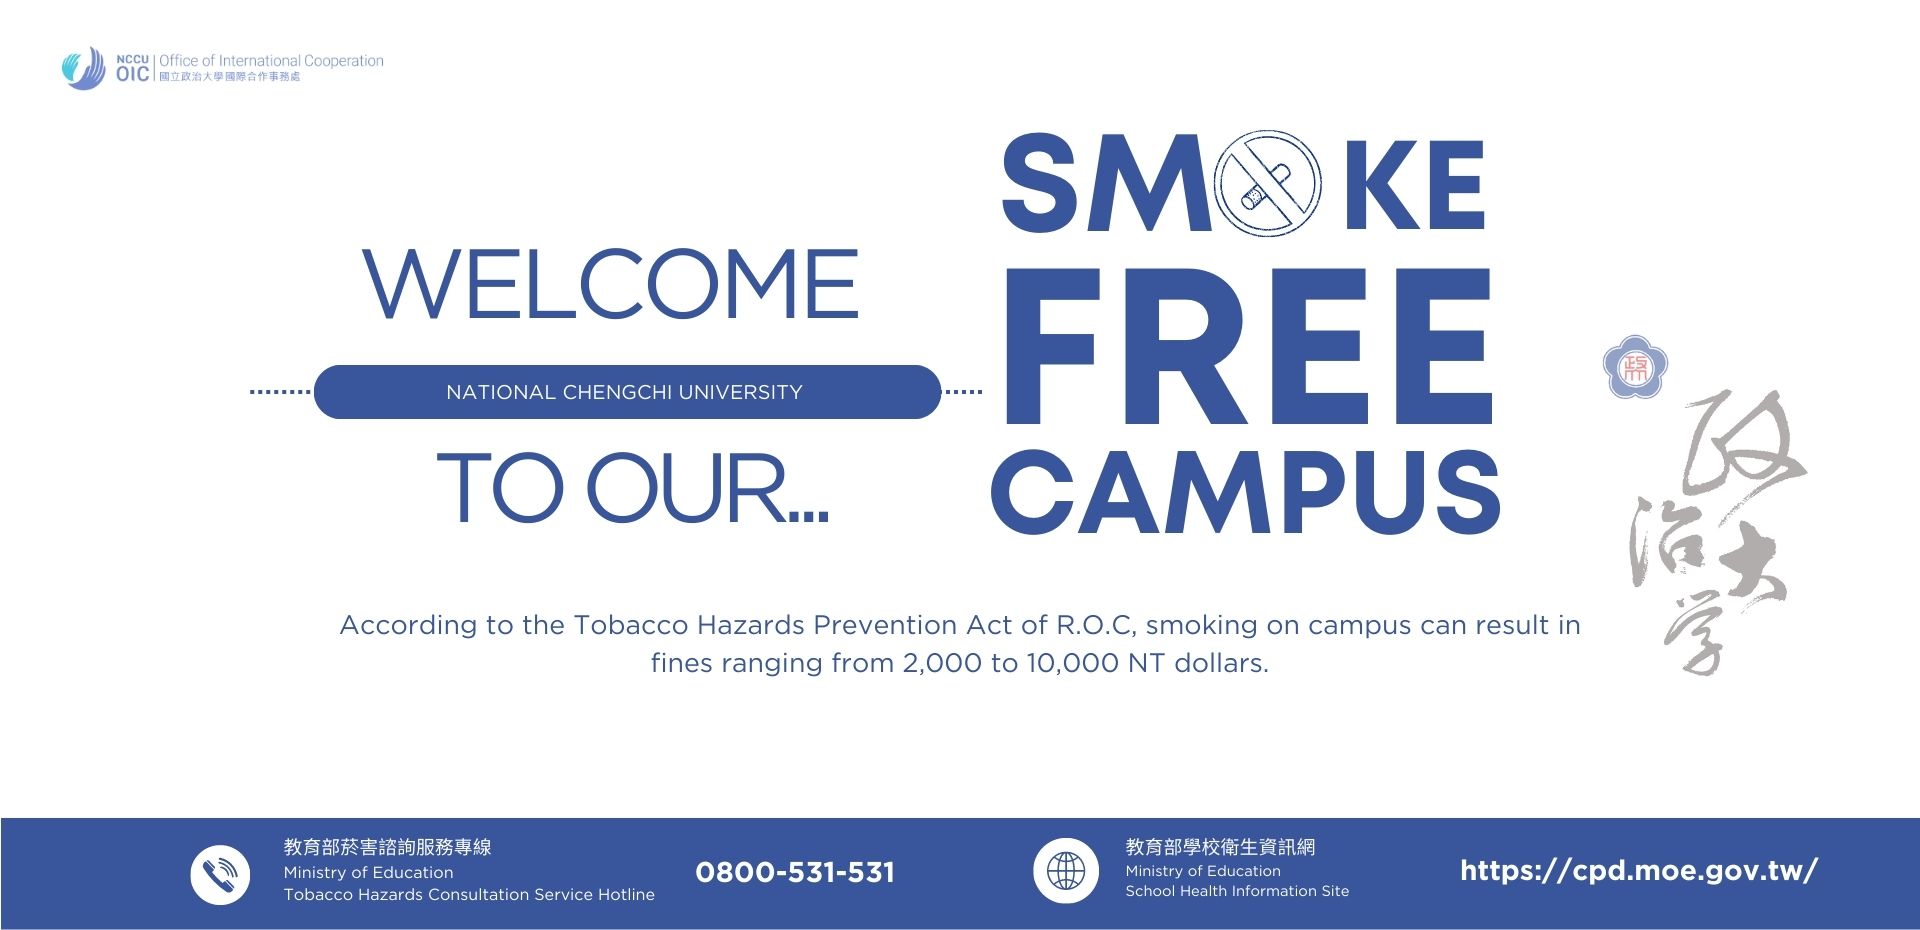 Smoke Free Campus